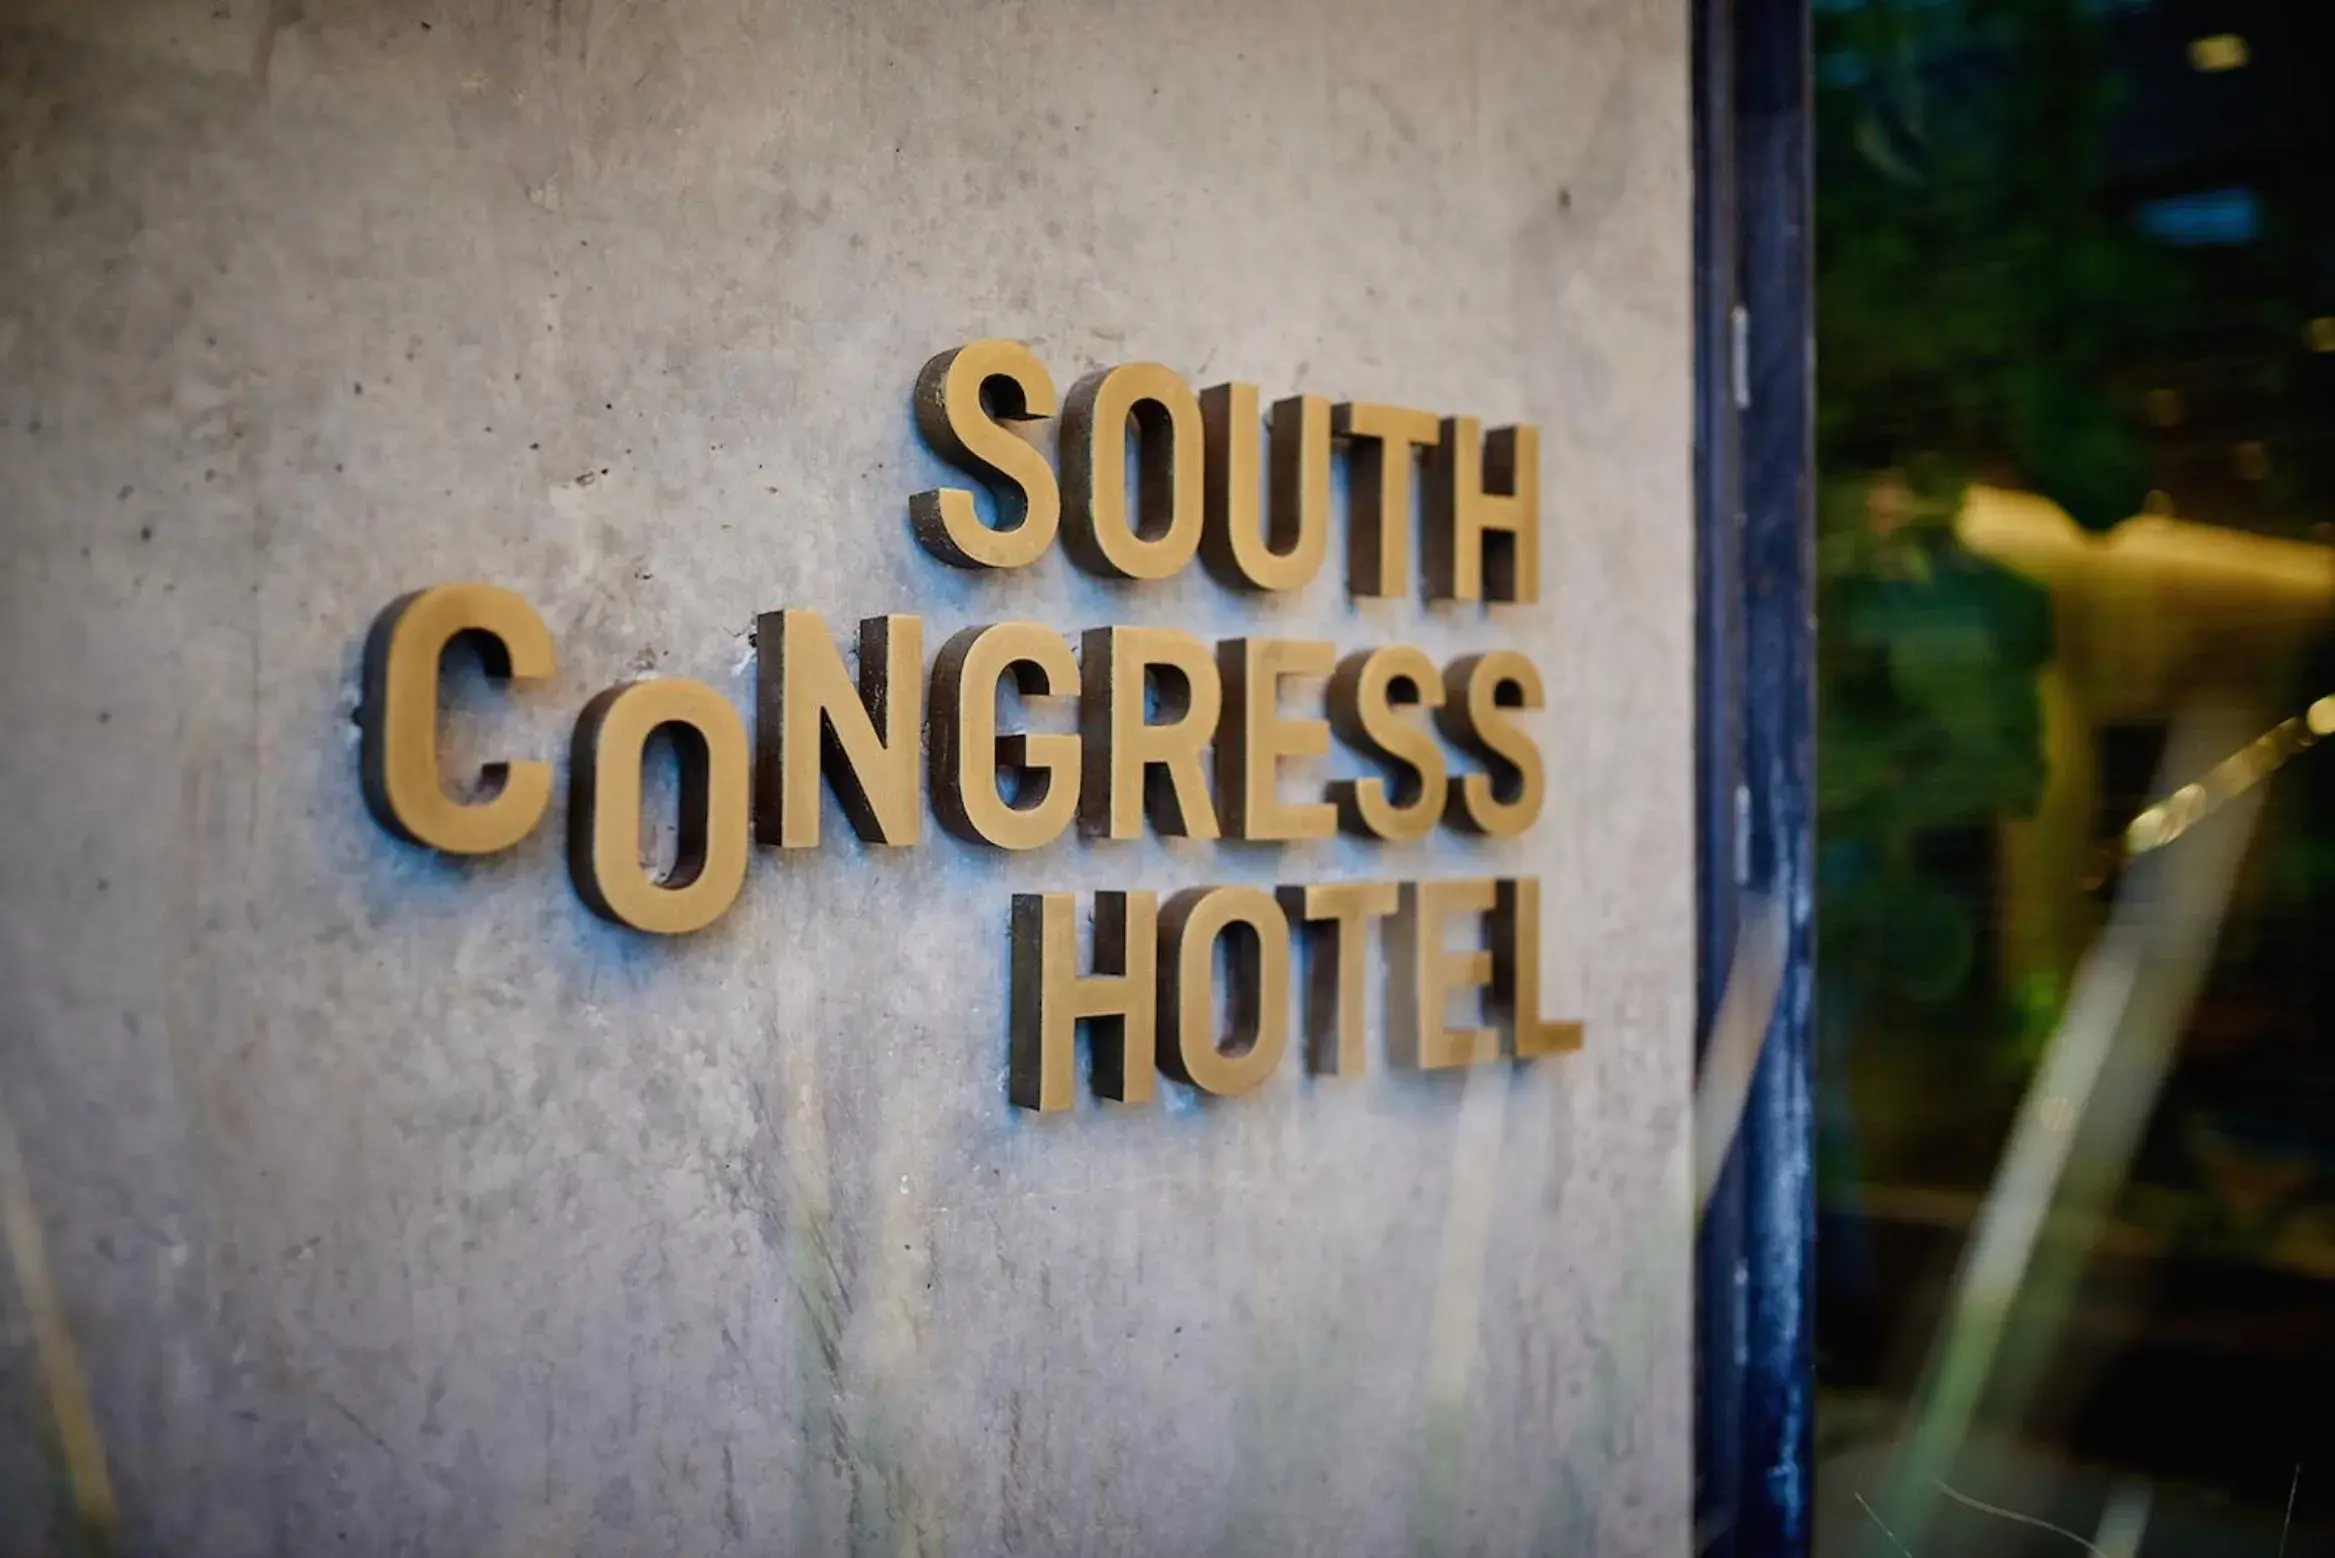 Facade/entrance in South Congress Hotel